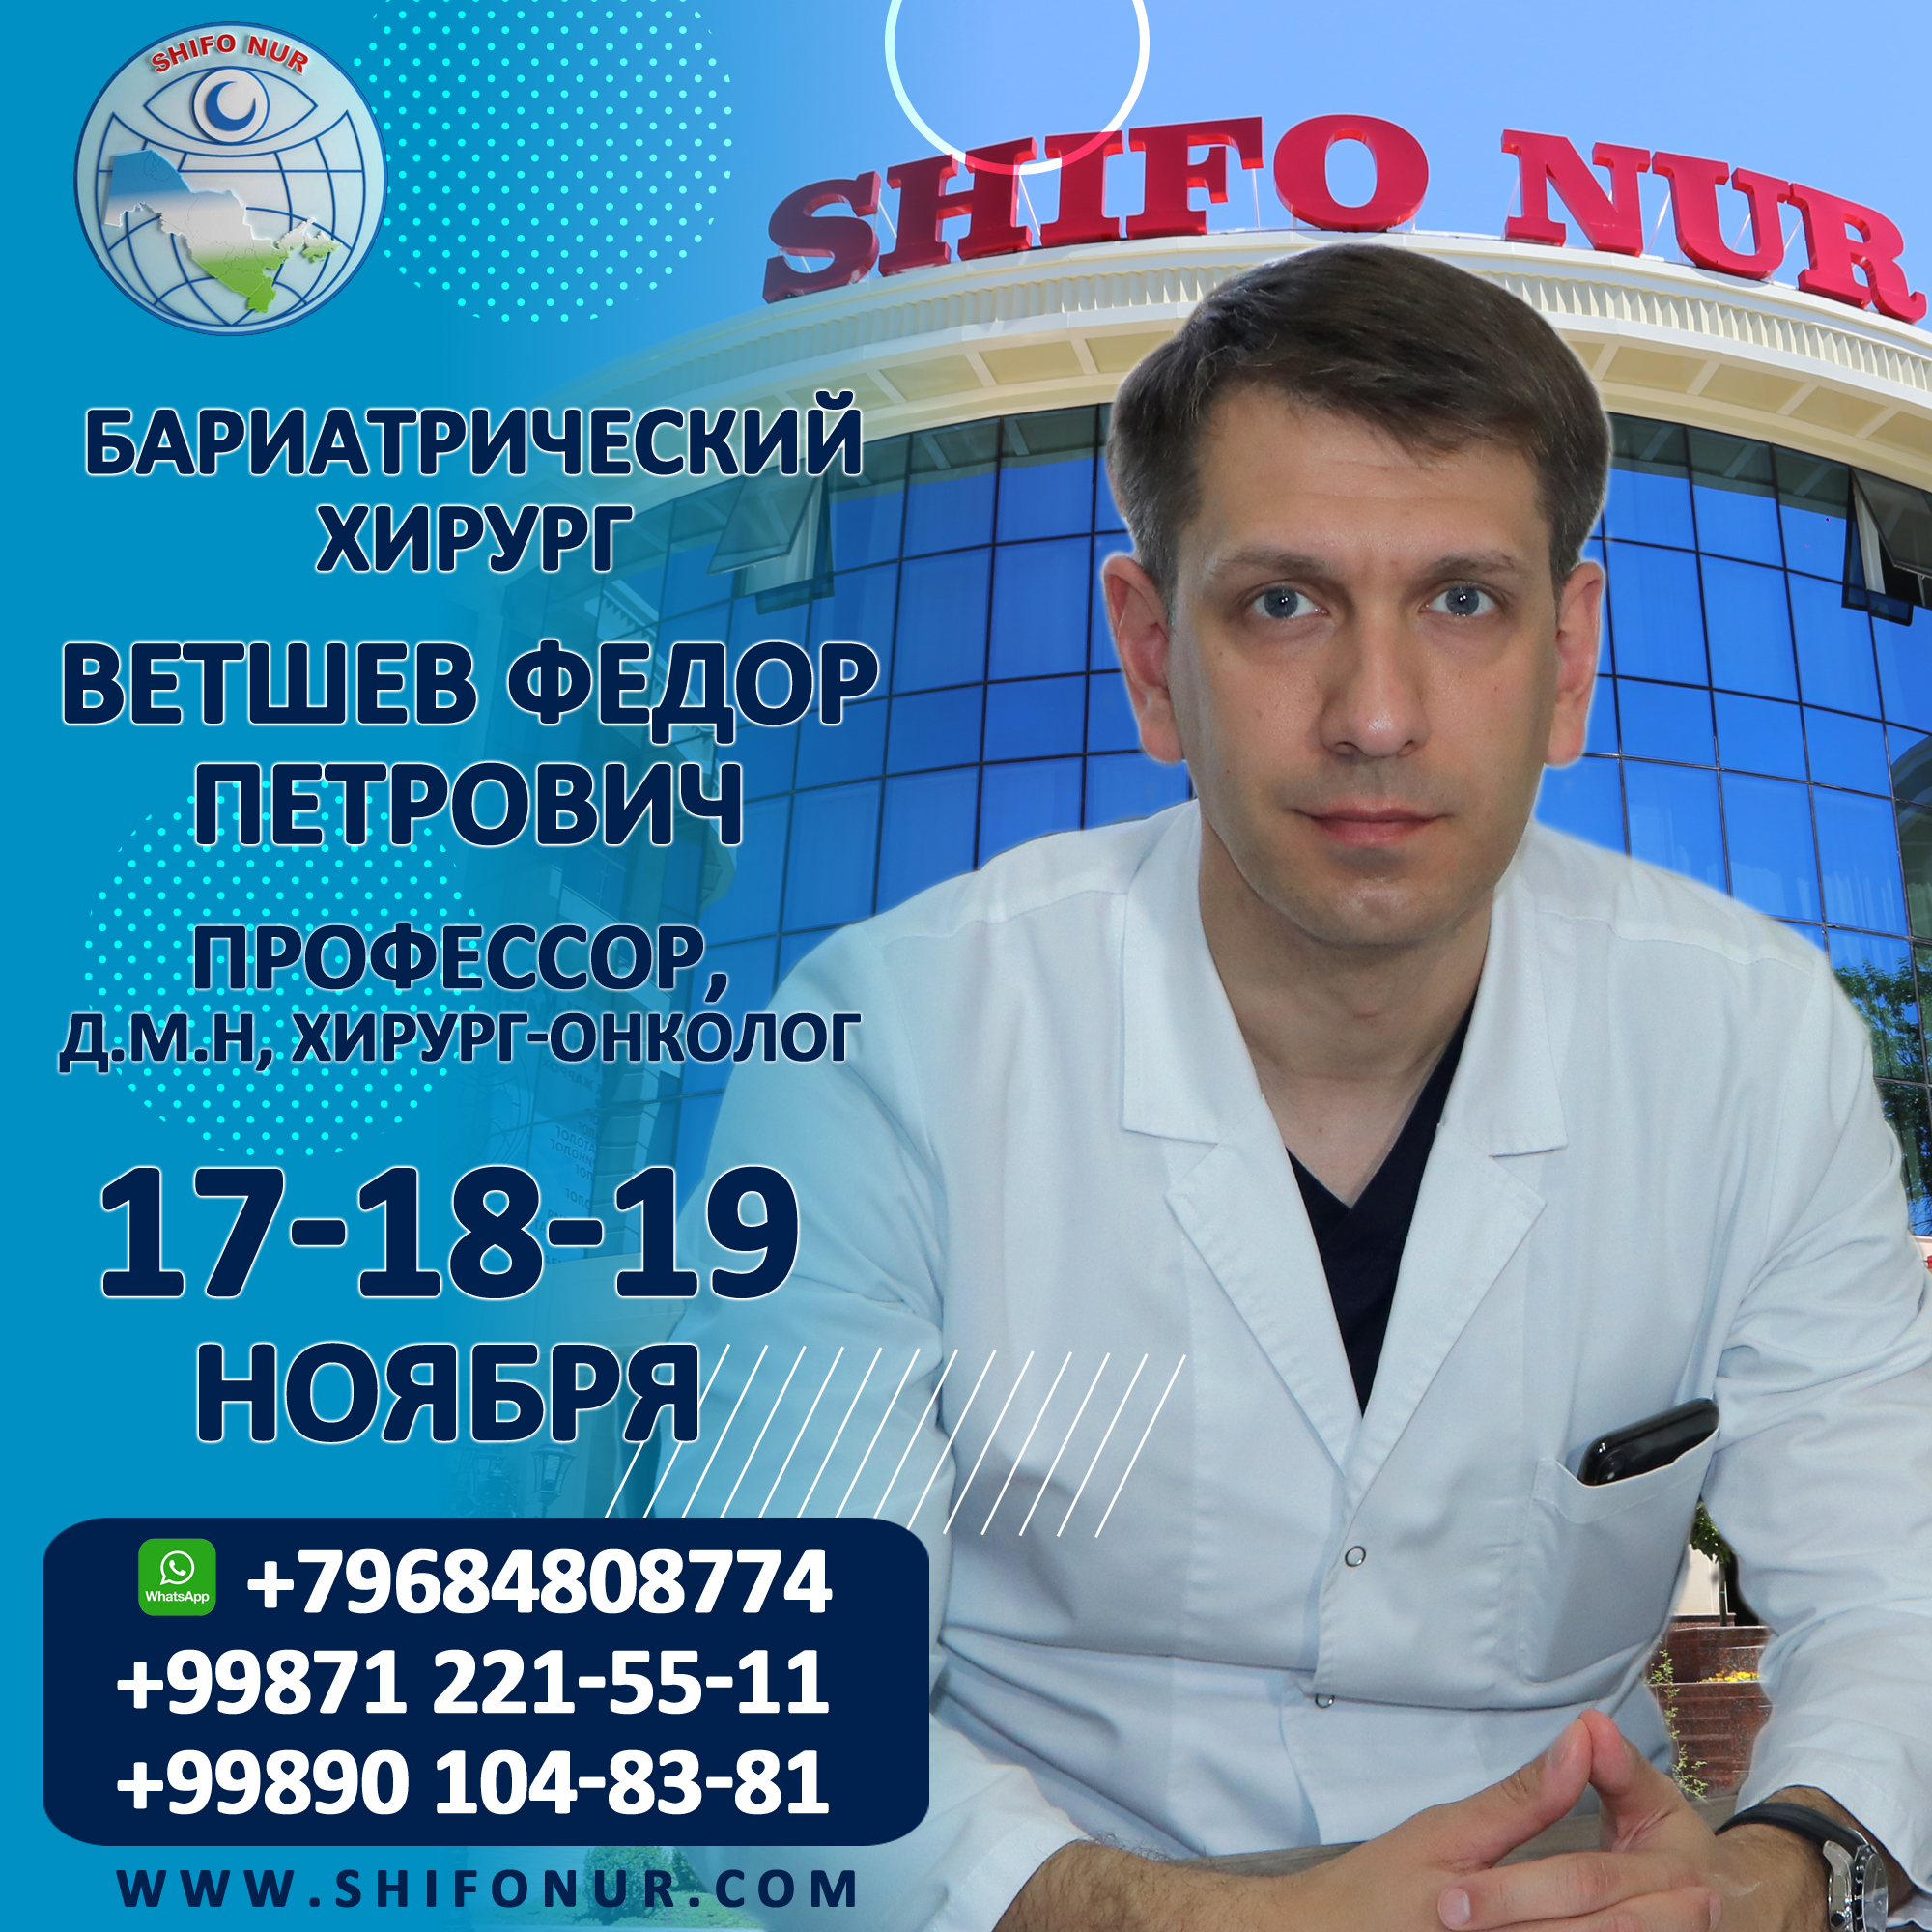 Только 17-18-19 ноября профессор будет вести прием и оперировать больных в Ташкенте.